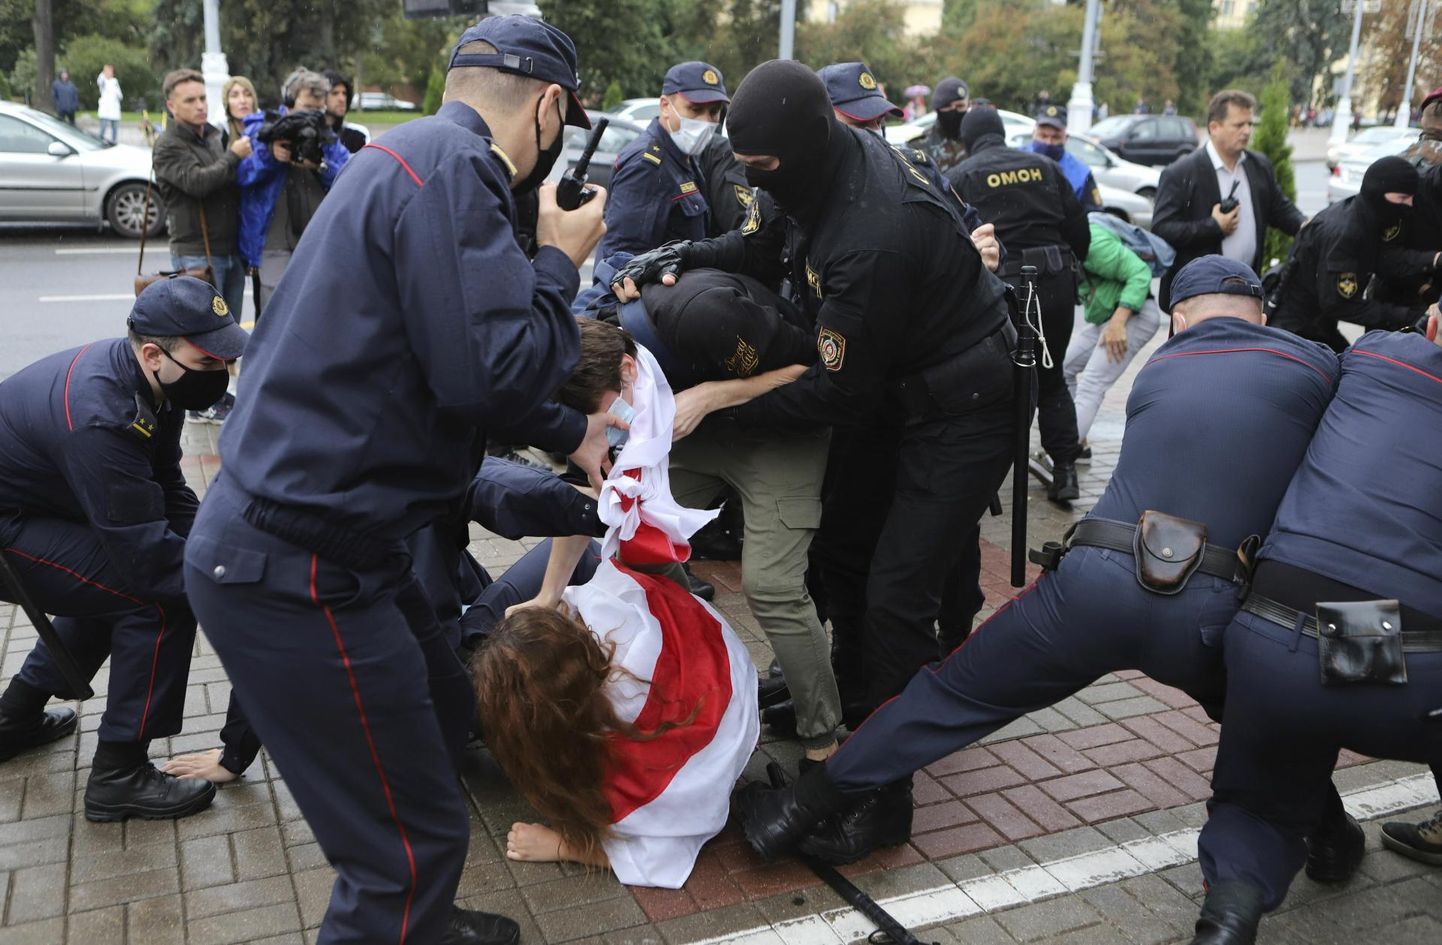 Politsei vahistas 1. septembril 2020. aastal Minskis kooliõpilasi, kes liitusid rahumeelsete meeleavaldusega, et seista vastu Lukašenka režiimi jätkamisele.